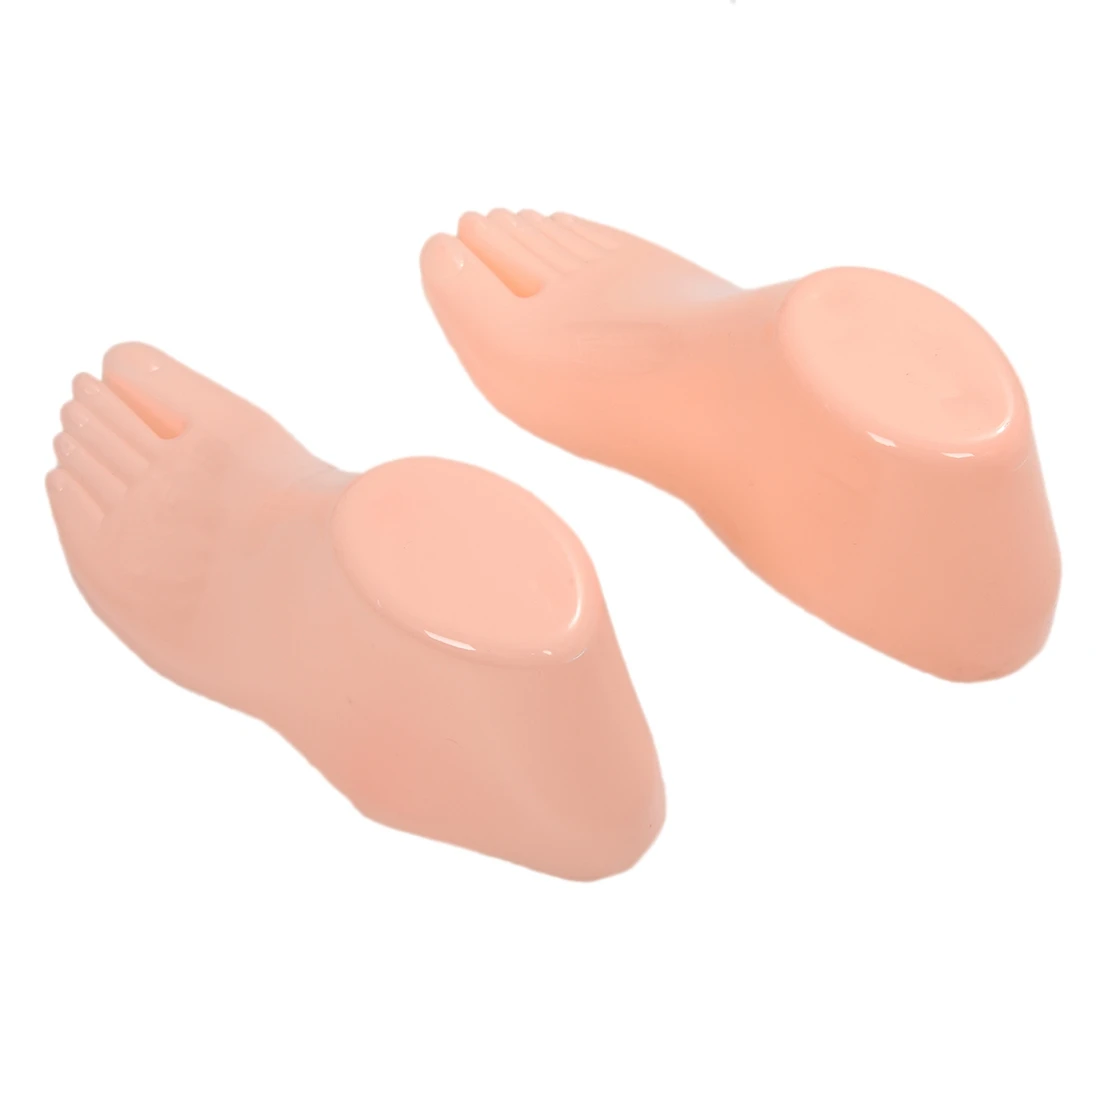 Горячие продажи твердых пластиковые ноги манекена модели инструменты для обуви дисплей(взрослые ноги